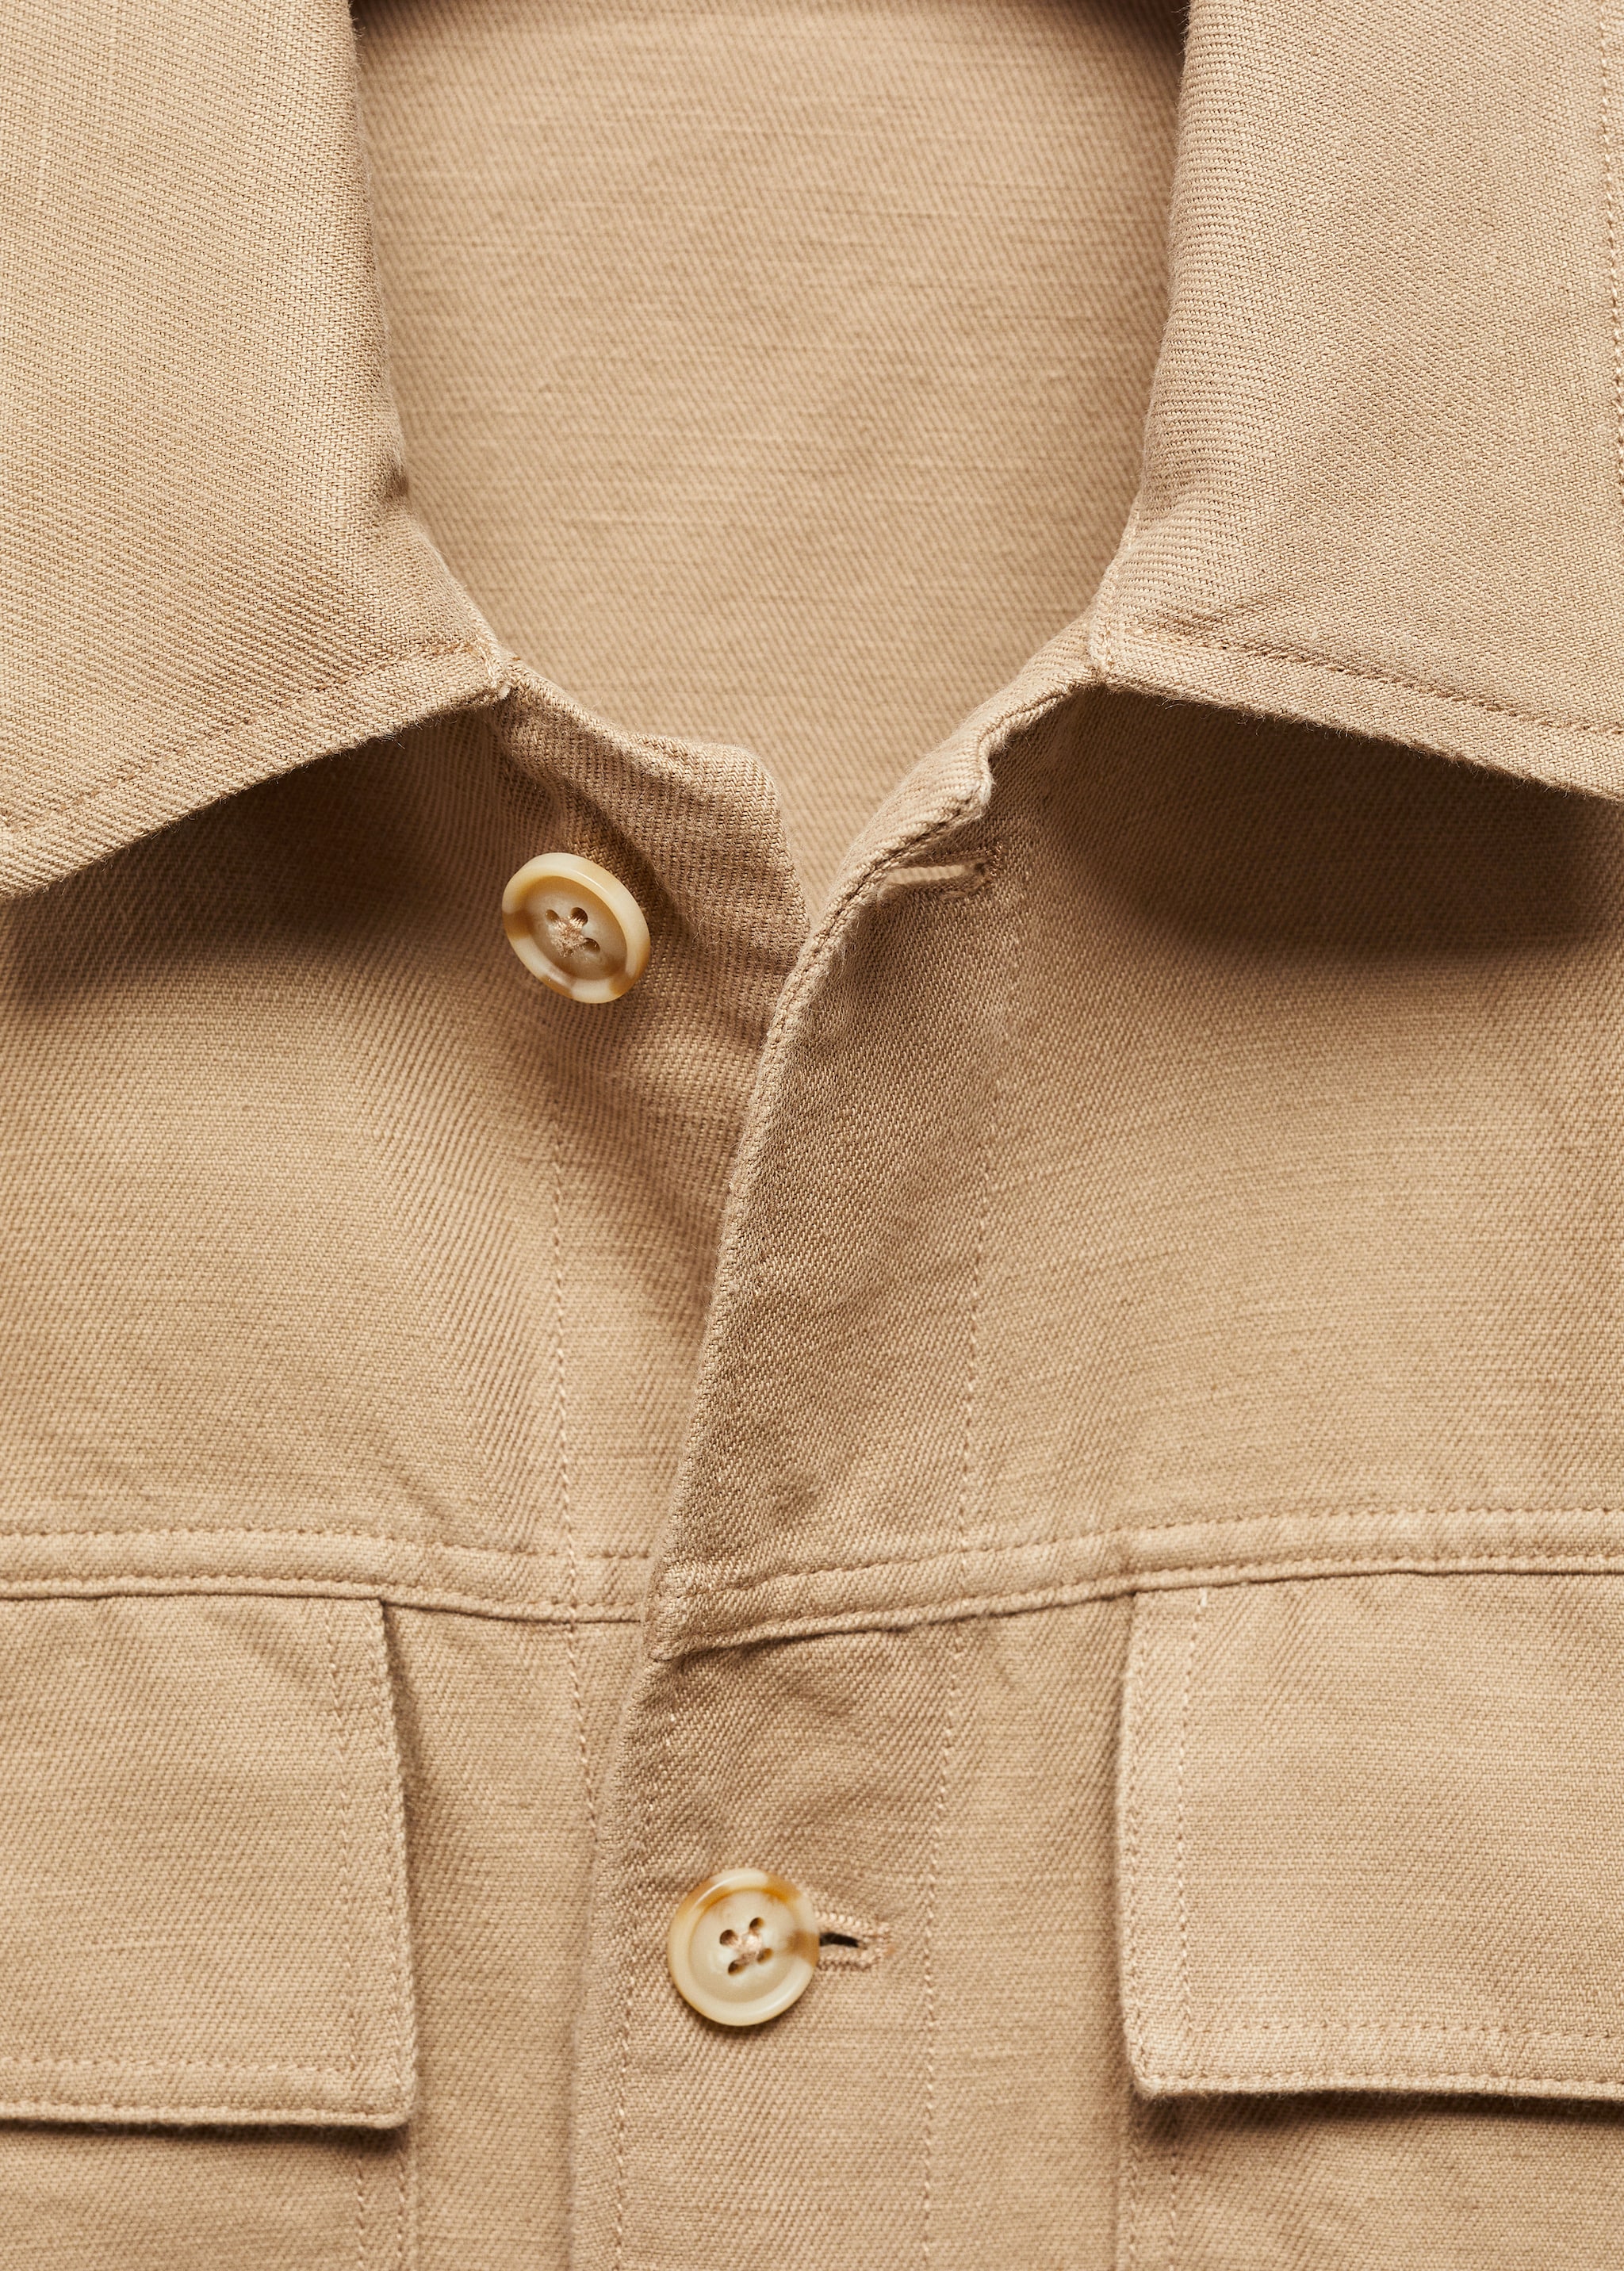 Sobrecamisa algodón lino bolsillos - Detalle del artículo 8